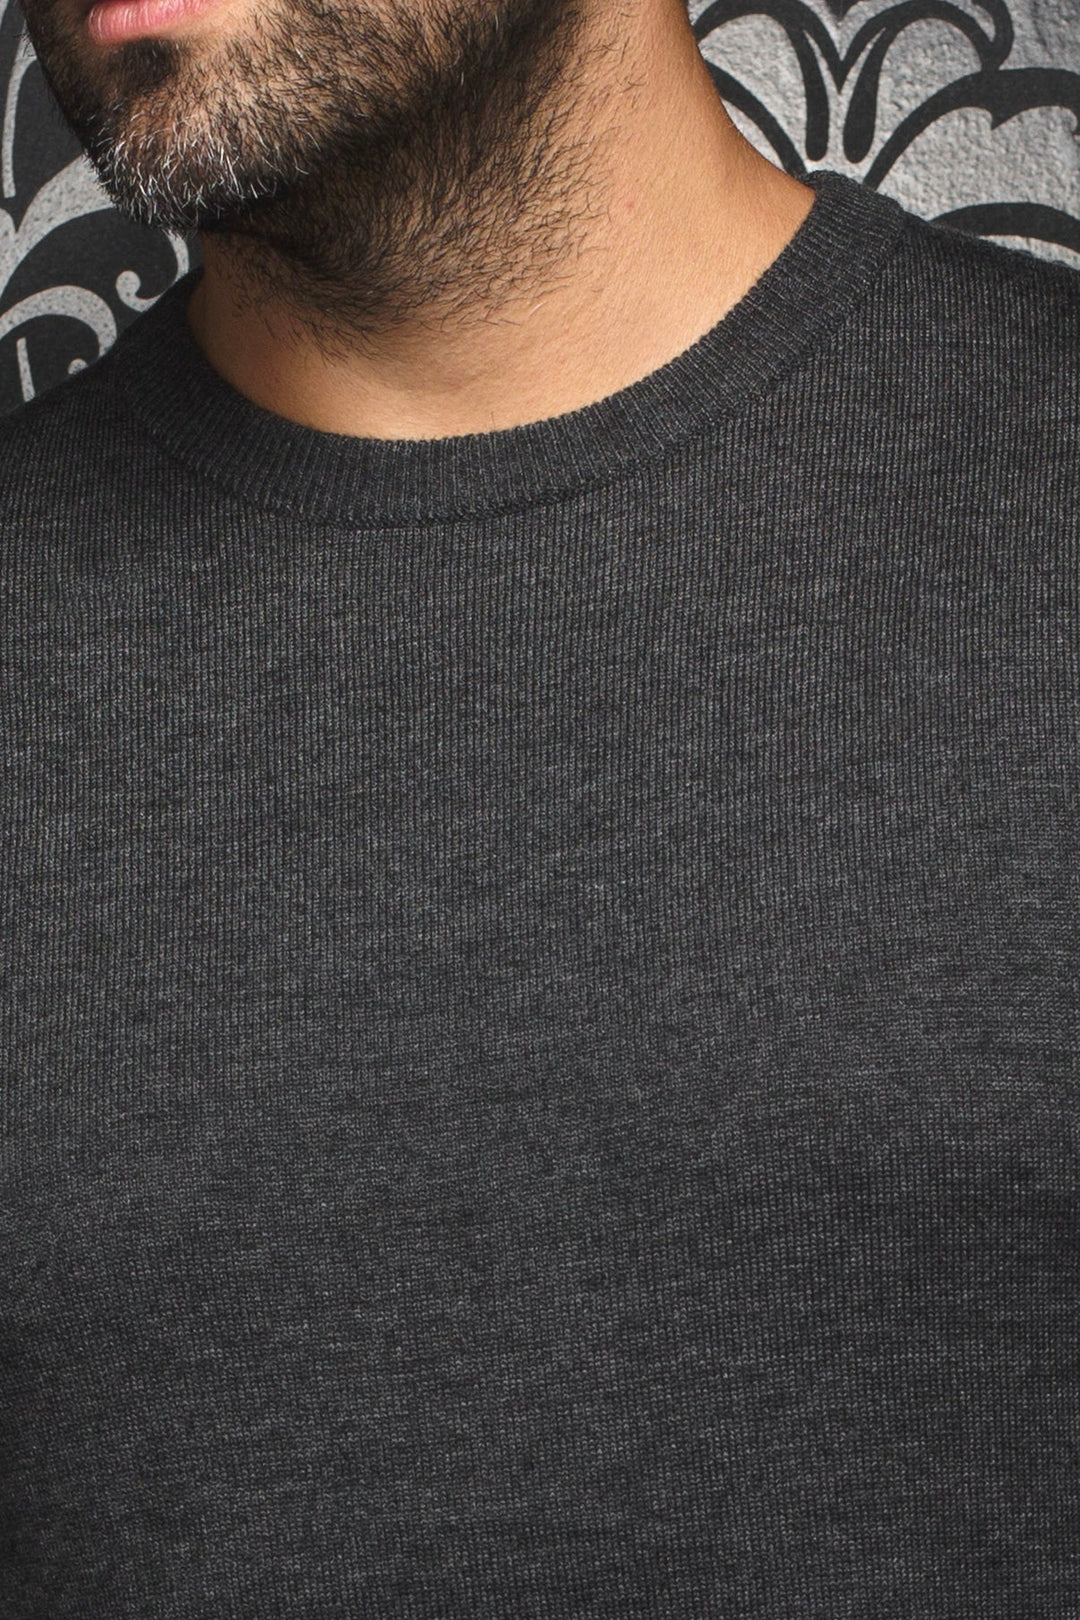 Dark gray Marini merino round neck sweater